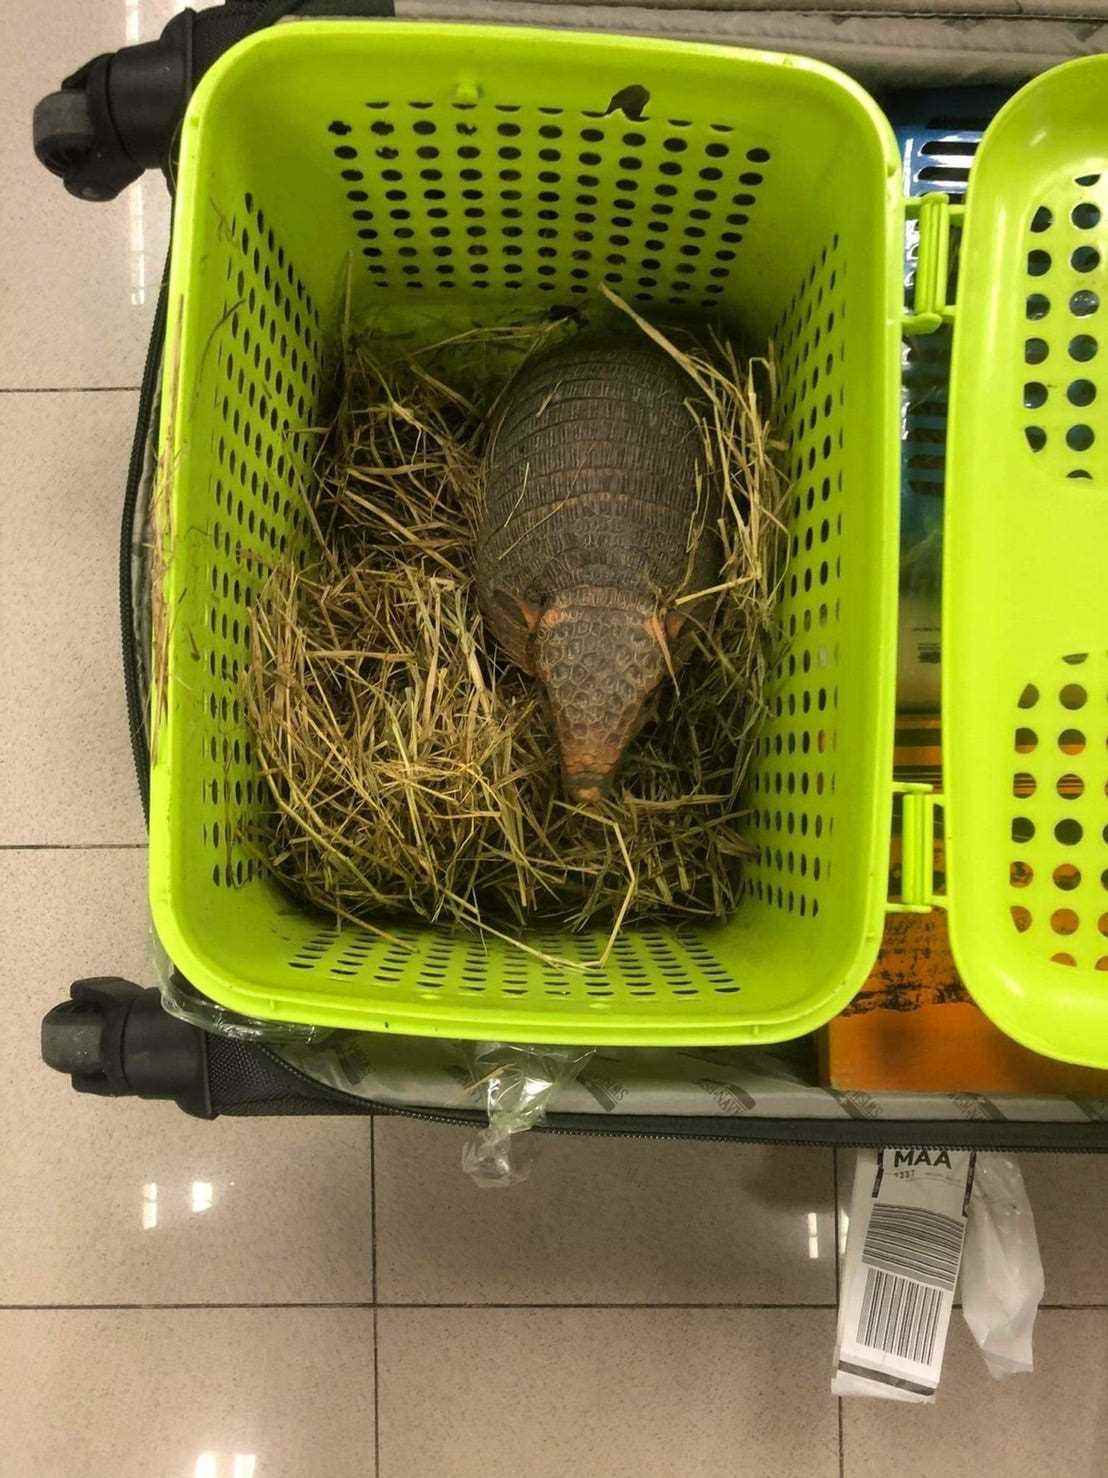 Gürteltier in Koffer am Flughafen Bangkok gefunden